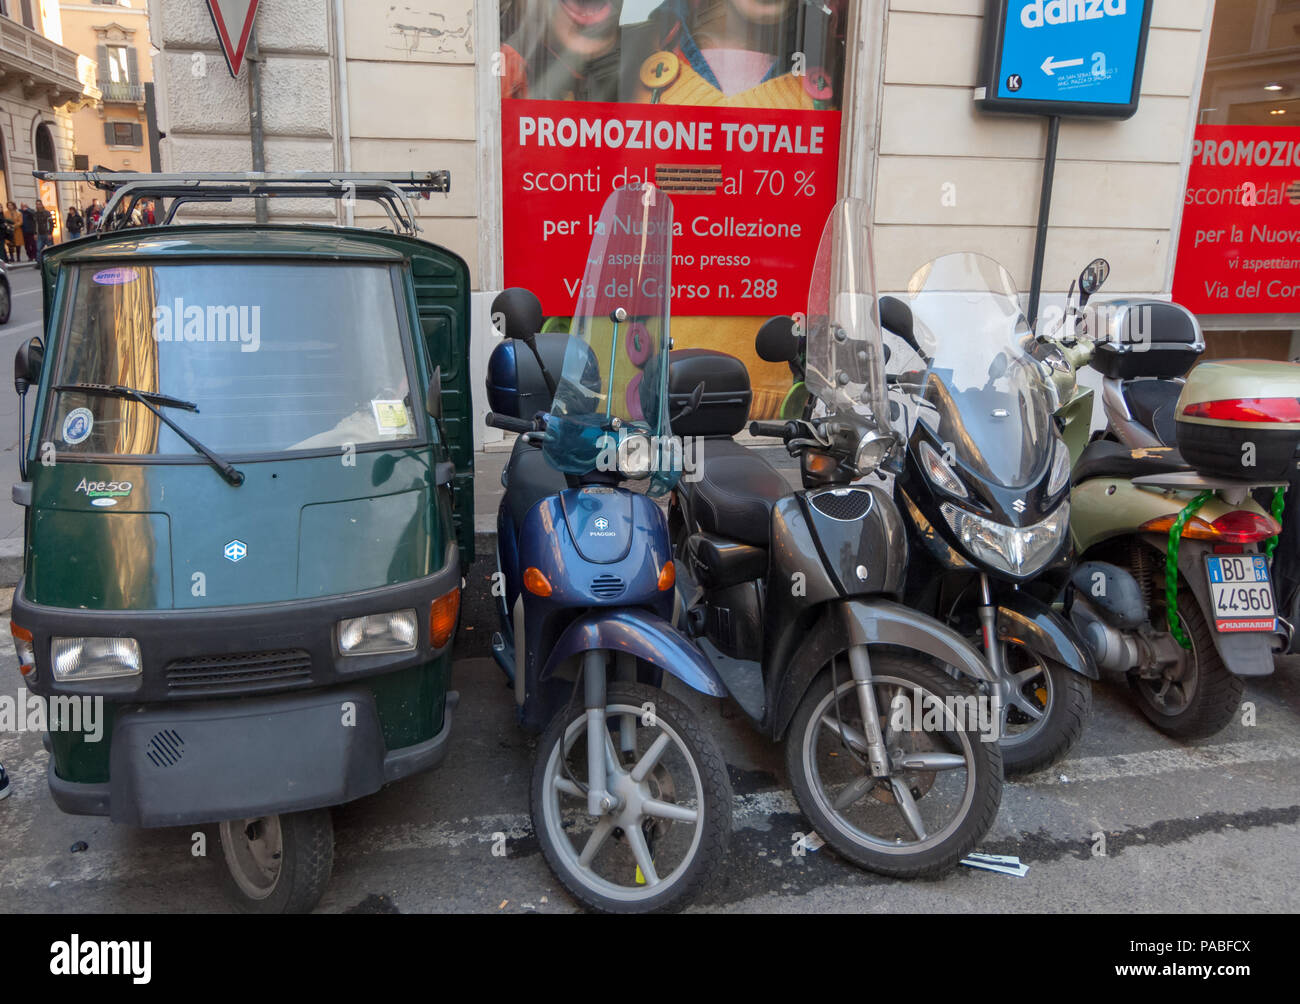 Scooter si affollano i parcheggi in Roma, ma c'è sempre spazio per un APE!  Foto stock - Alamy